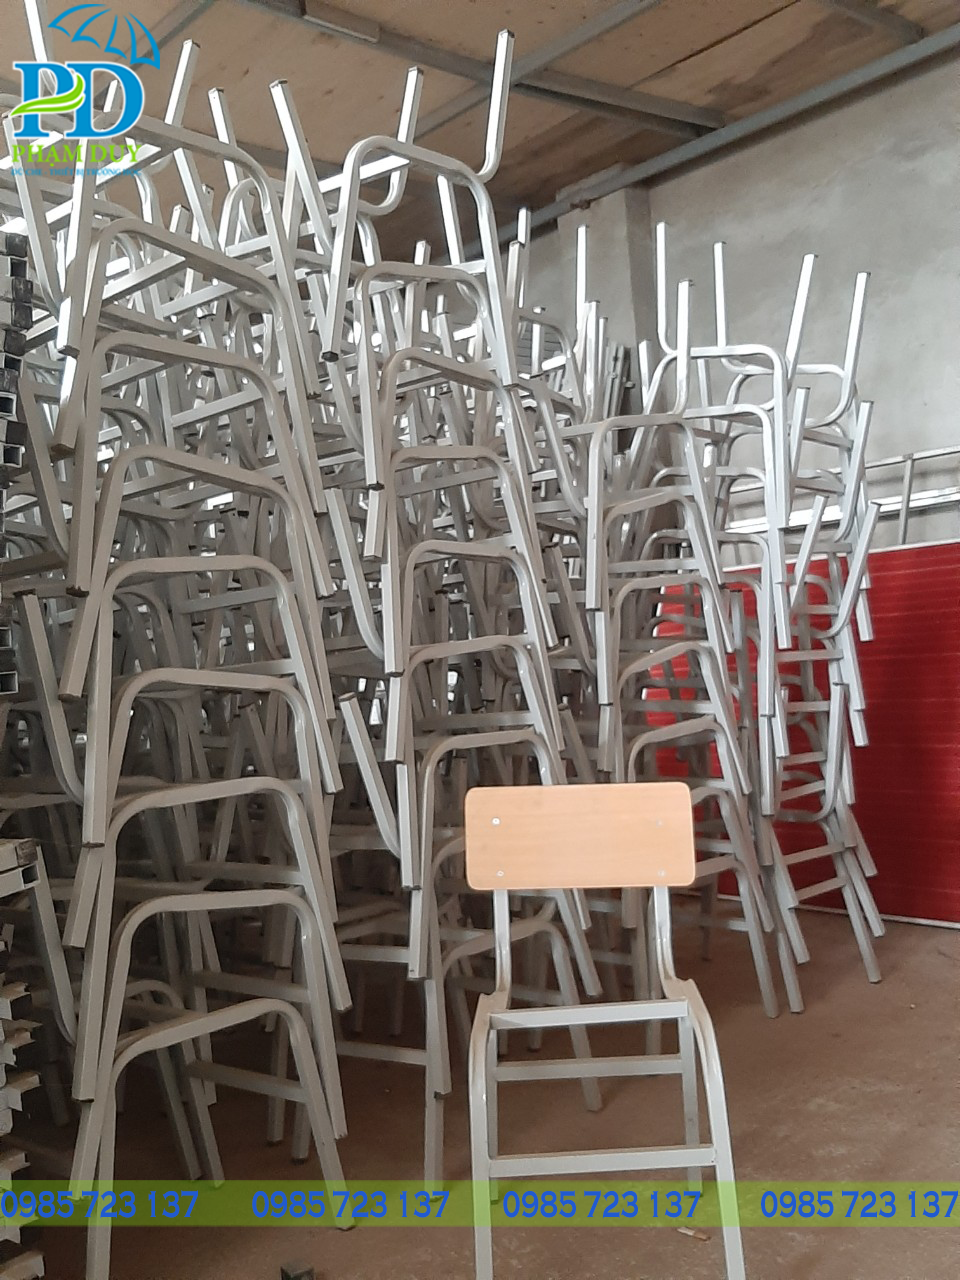 Công ty thiết bị trường học Phạm Duy cung cấp nhiều mẫu bàn ghế học sinh giá rẻ